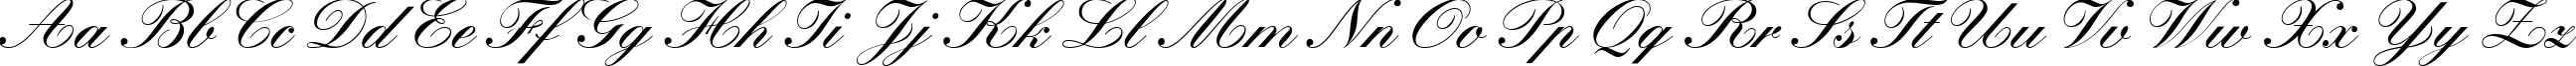 Пример написания английского алфавита шрифтом Manuscript